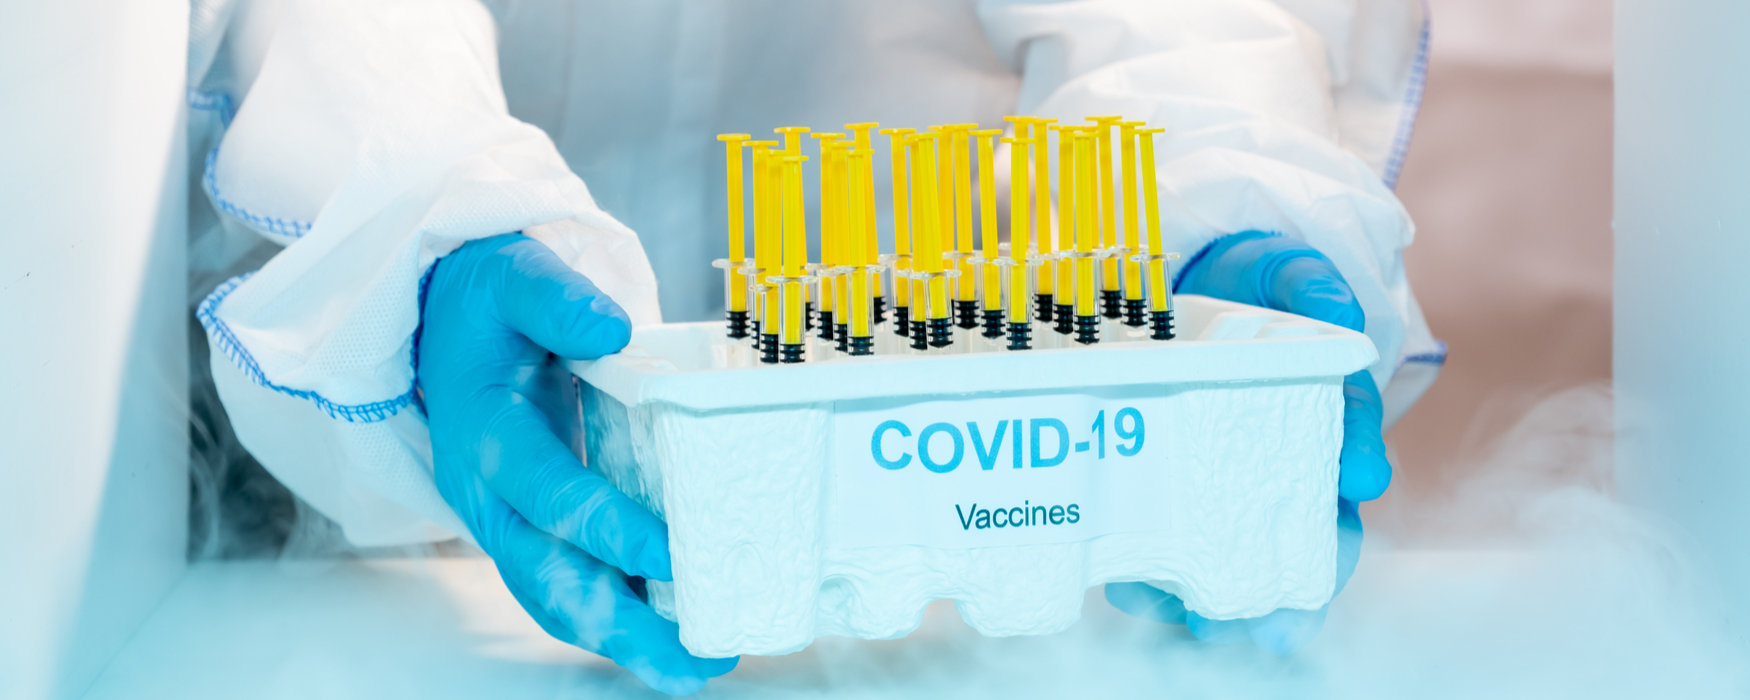 covid vaccine freezers - covid 19 vaccine freezer - vaccine storage